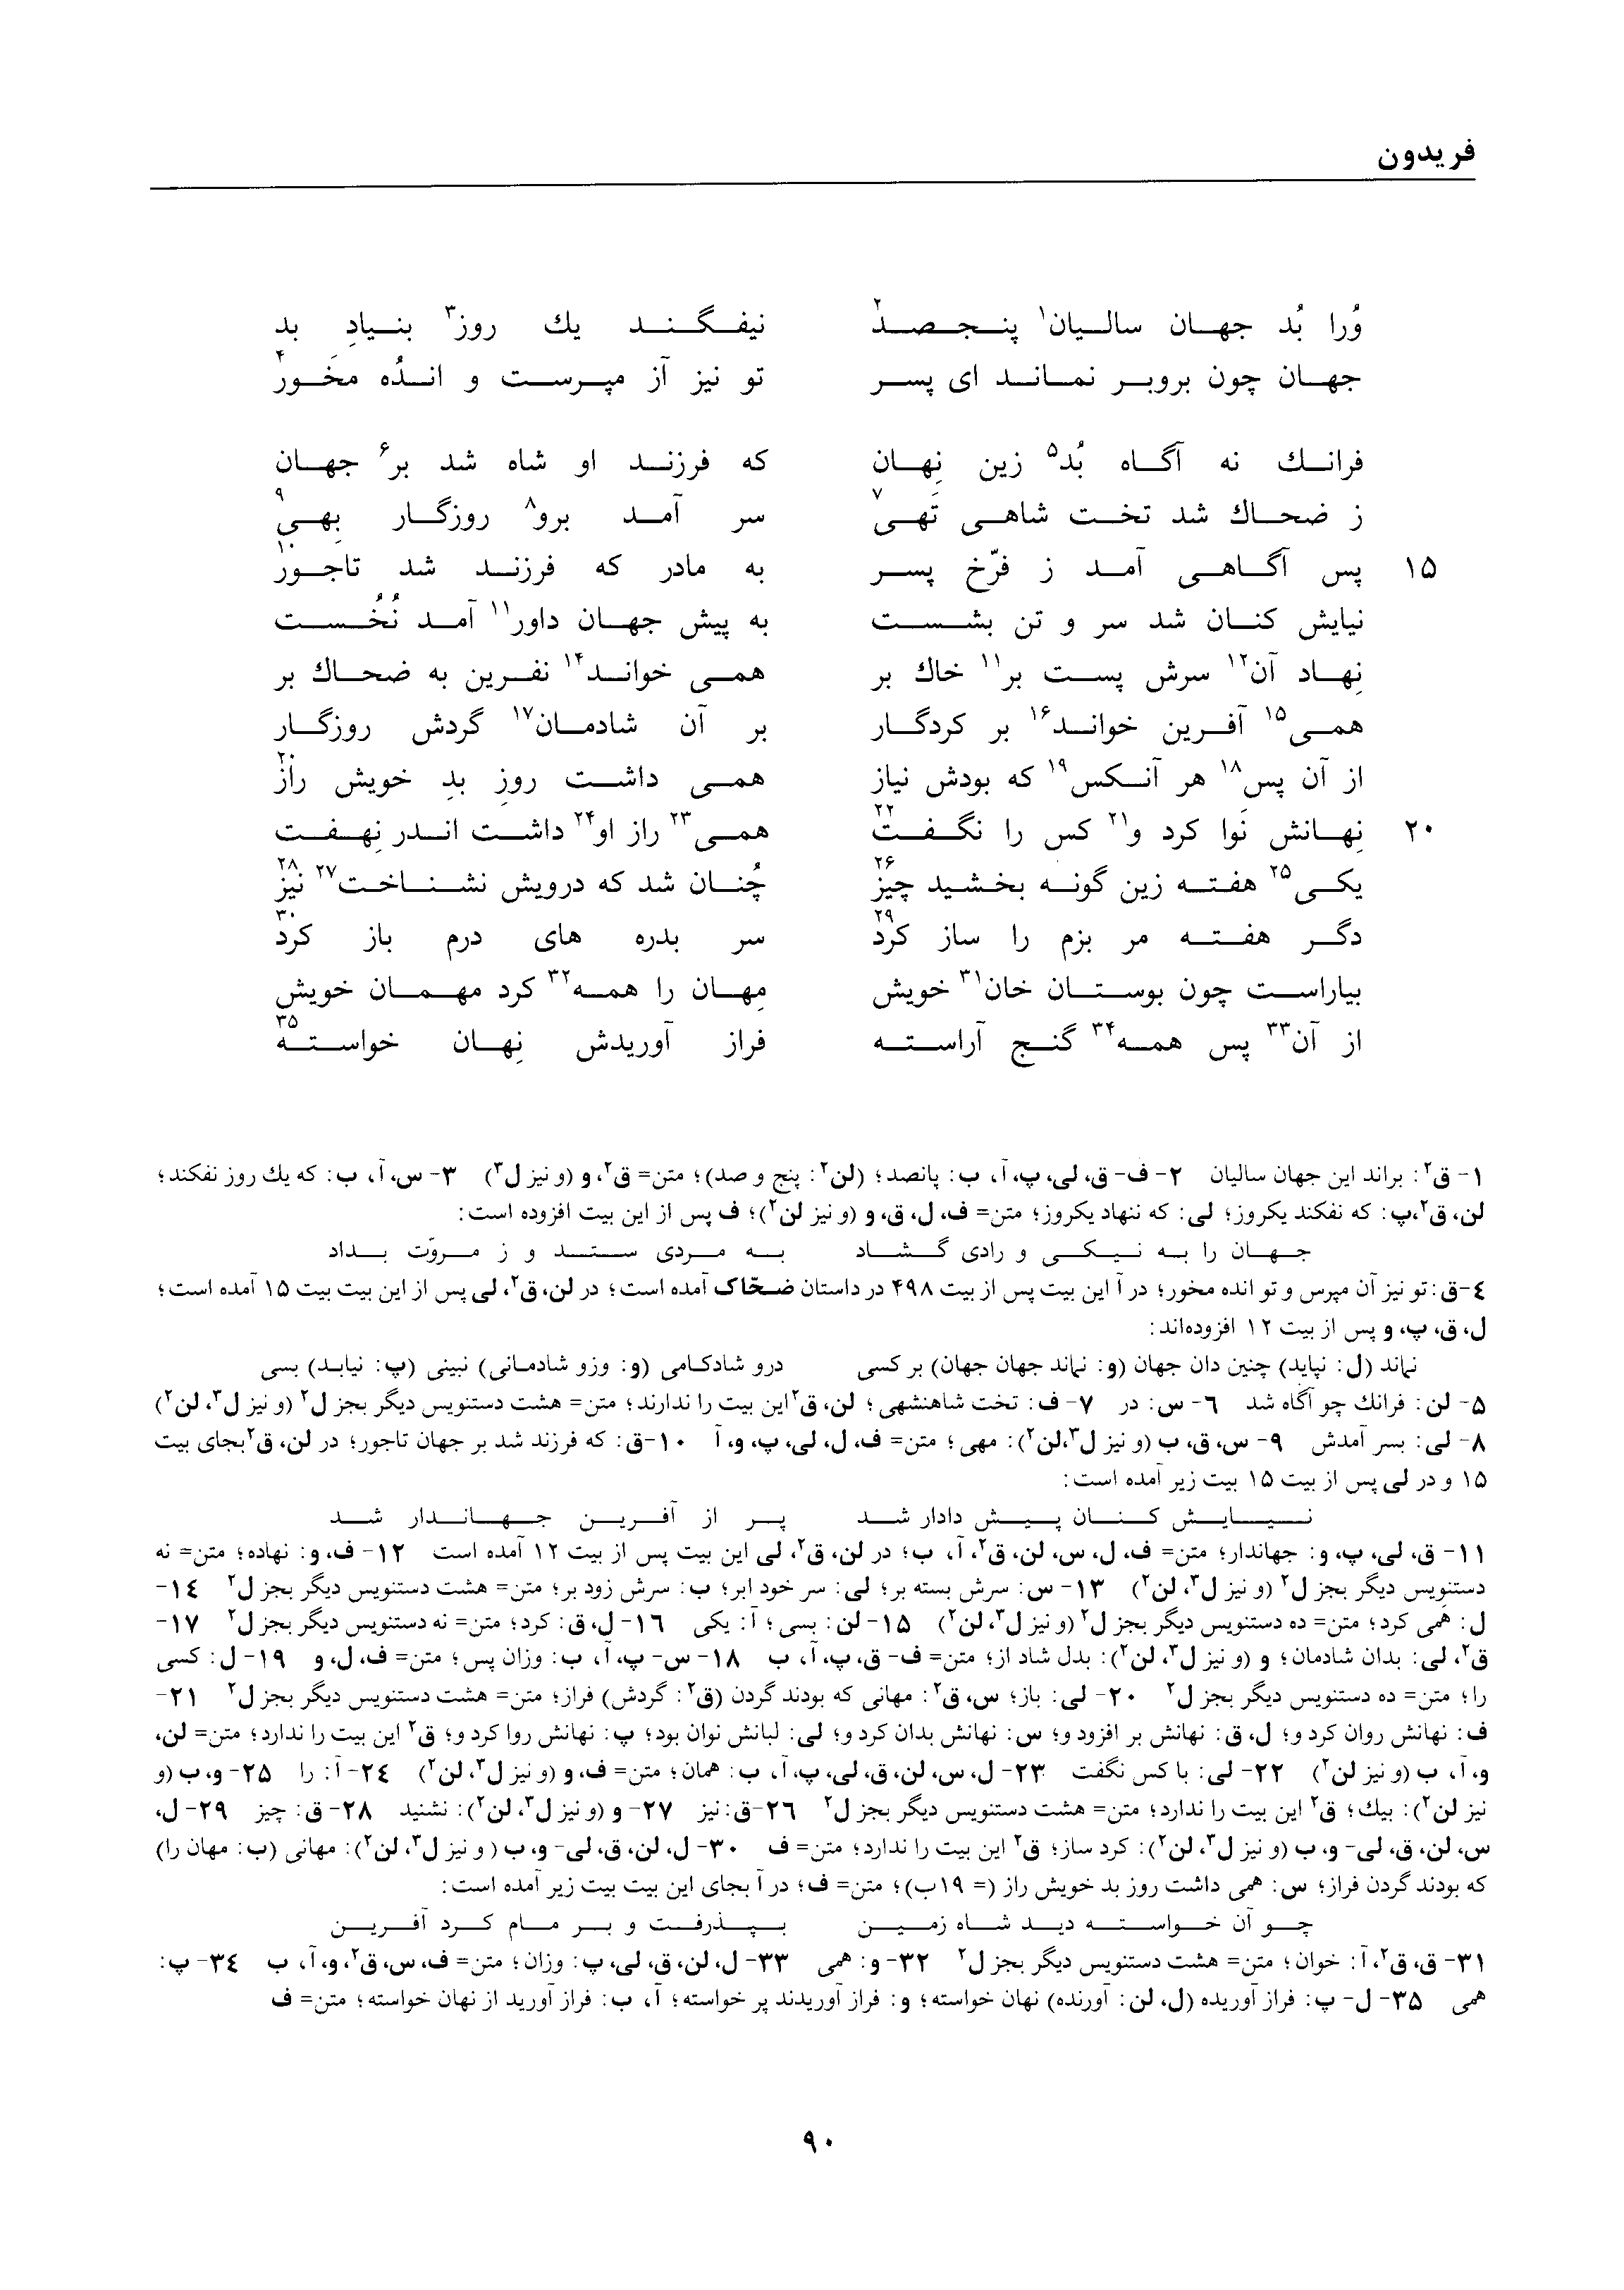 vol. 1, p. 90